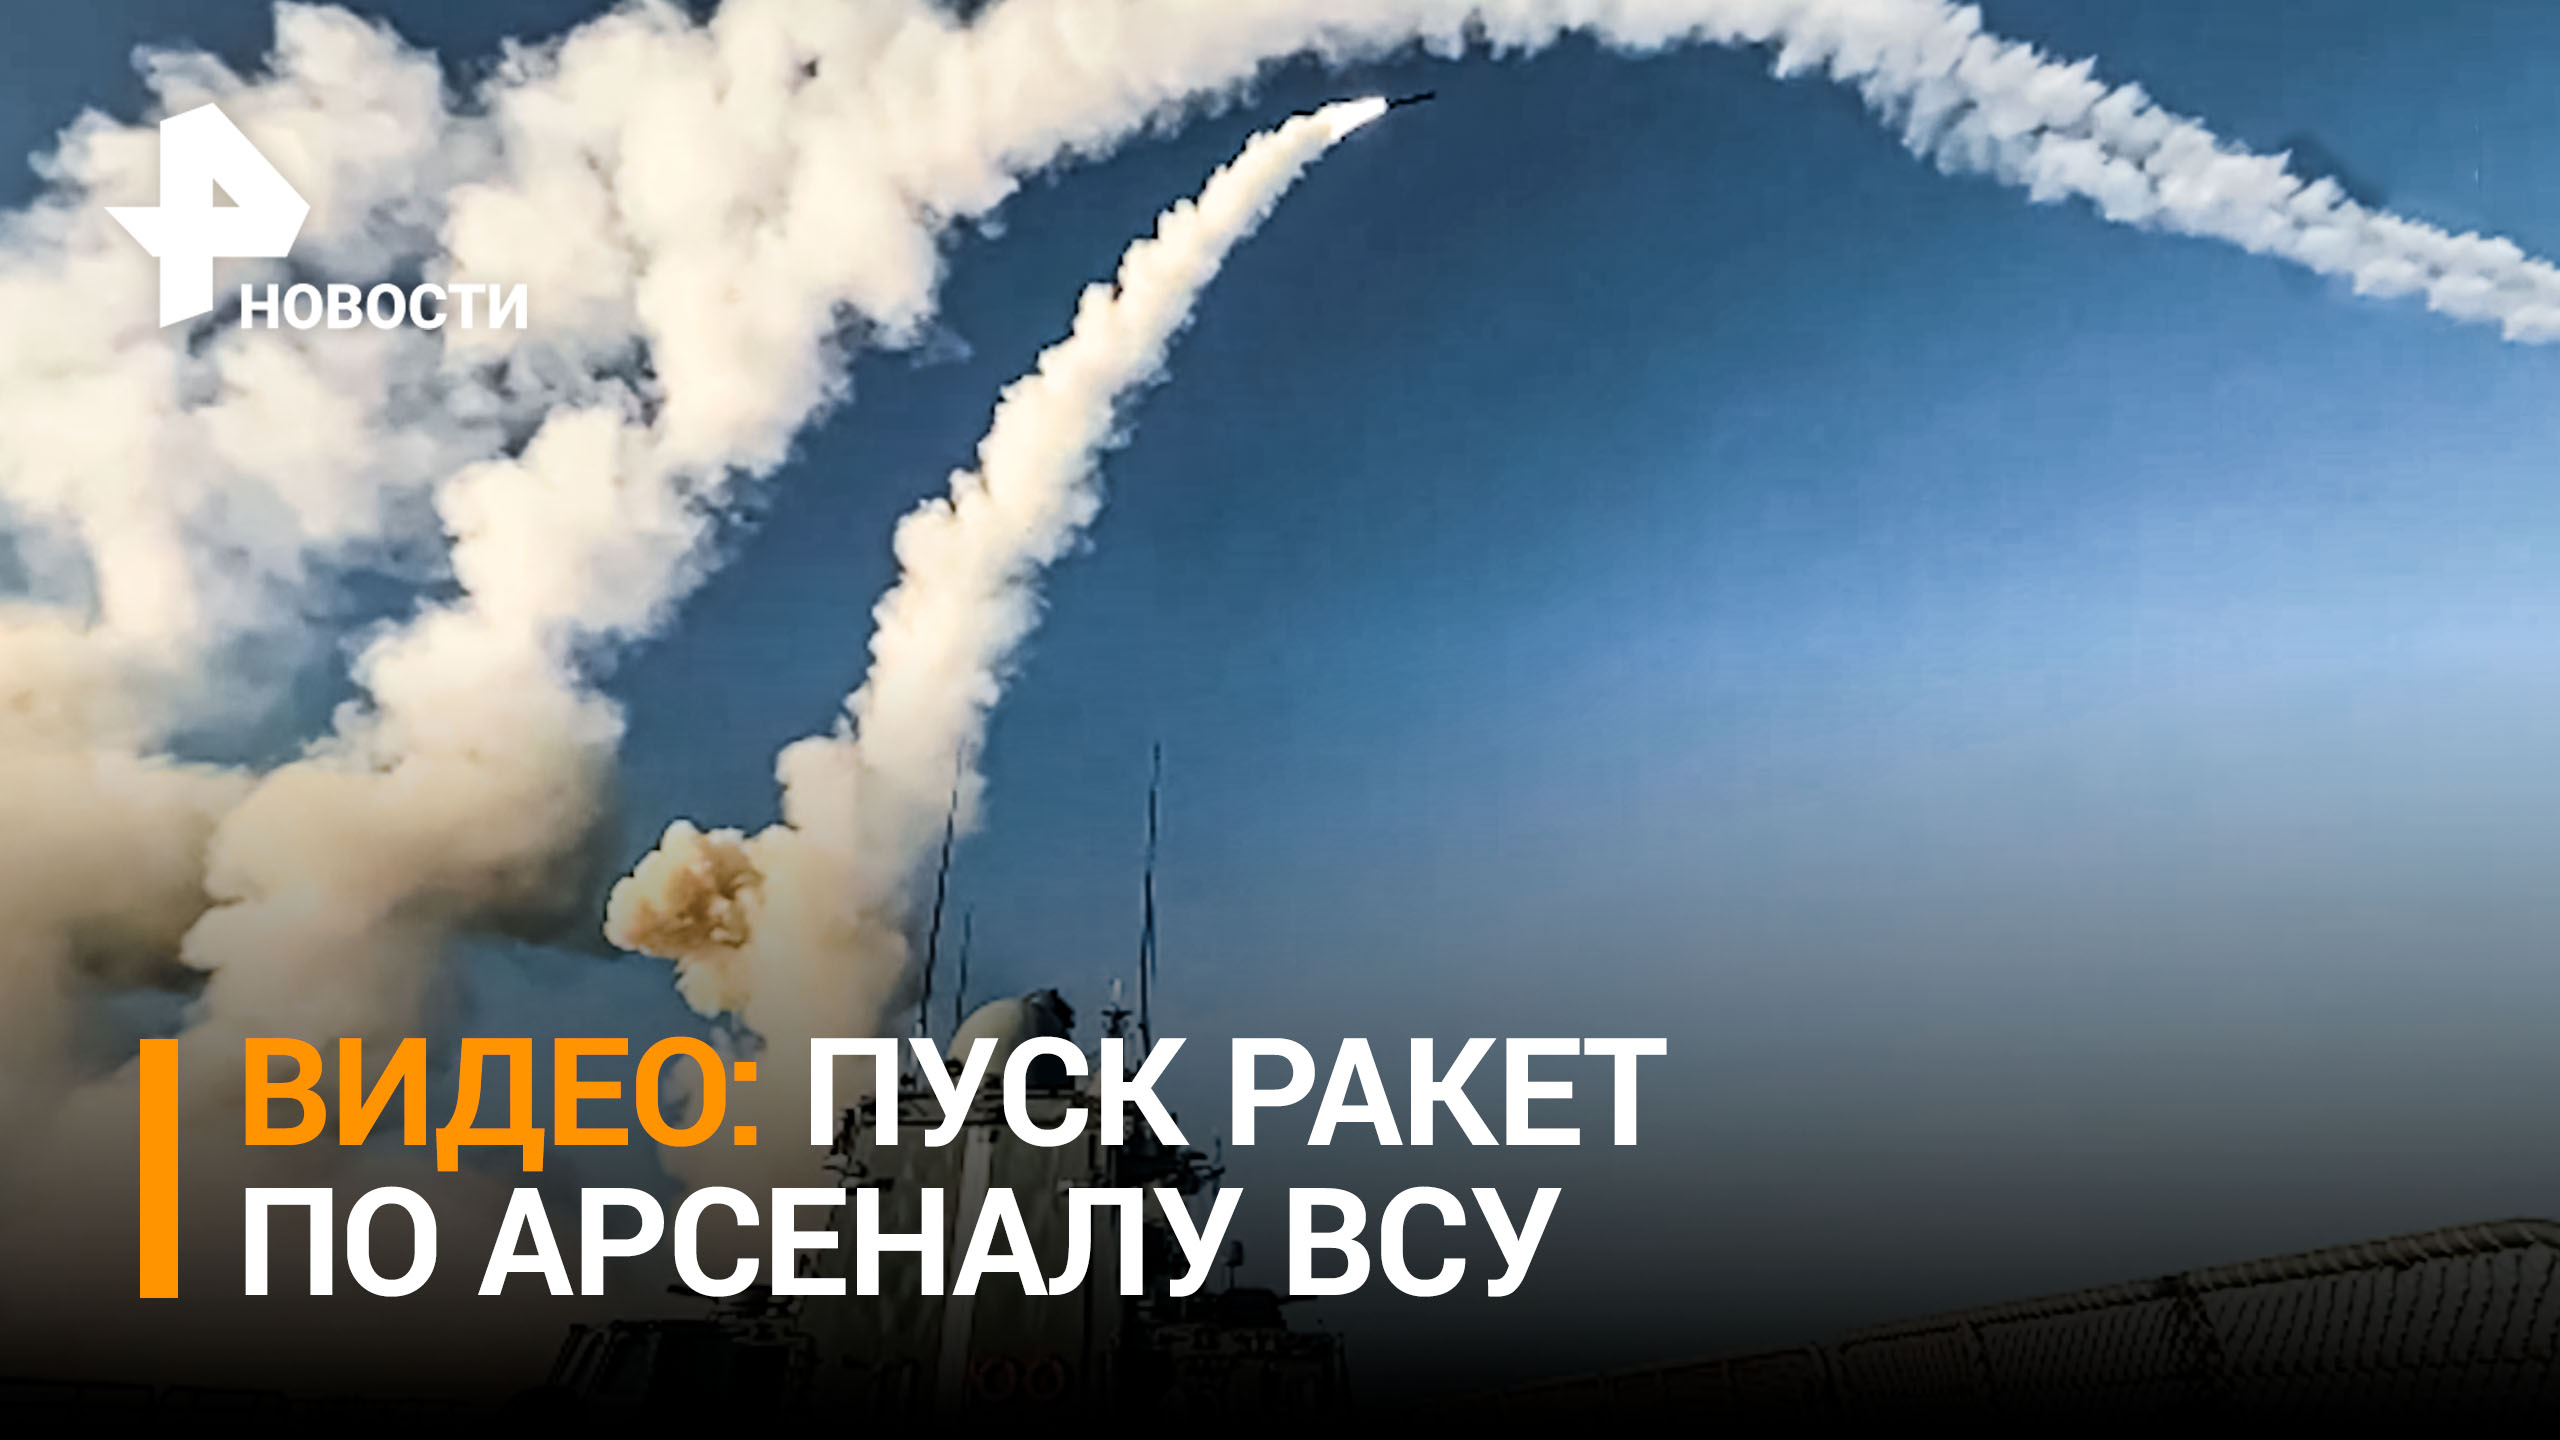 Момент пуска высокоточных ракет по арсеналу ВСУ во Львовской области. Видео Минобороны / РЕН Новости